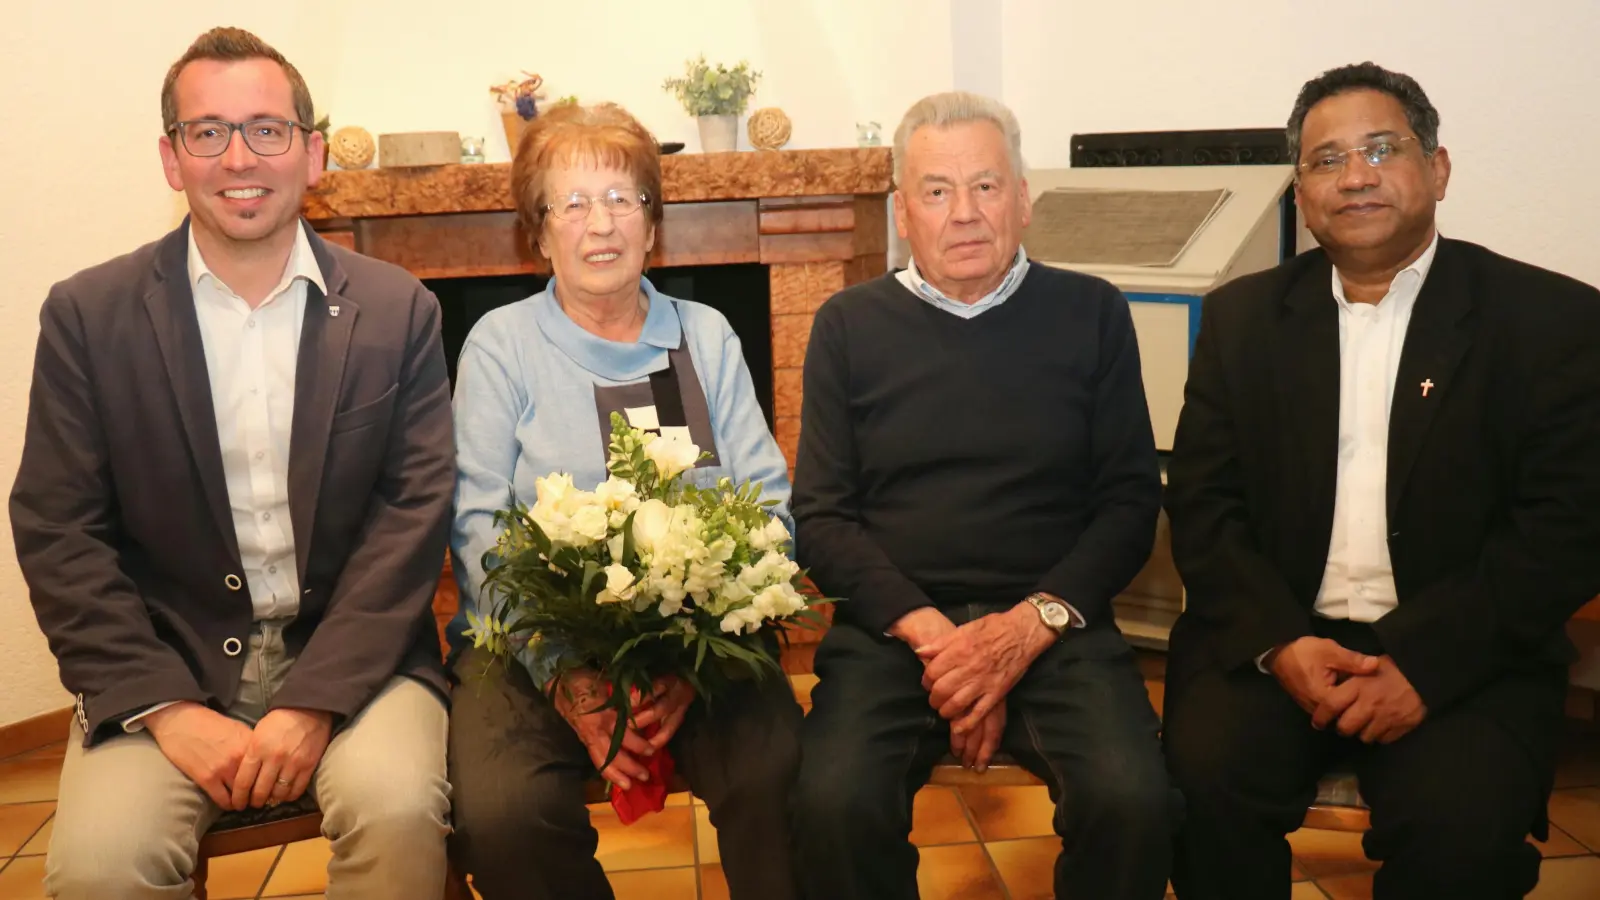 <b>Seit 60 Jahren</b> sind Sophia und Martin Bader ein Ehepaar. Zur diamantenen Hochzeit gratulierten Rehlings Bürgermeister Christoph Aidelsburger und Pater Thomas.  (Foto: Josef Abt)